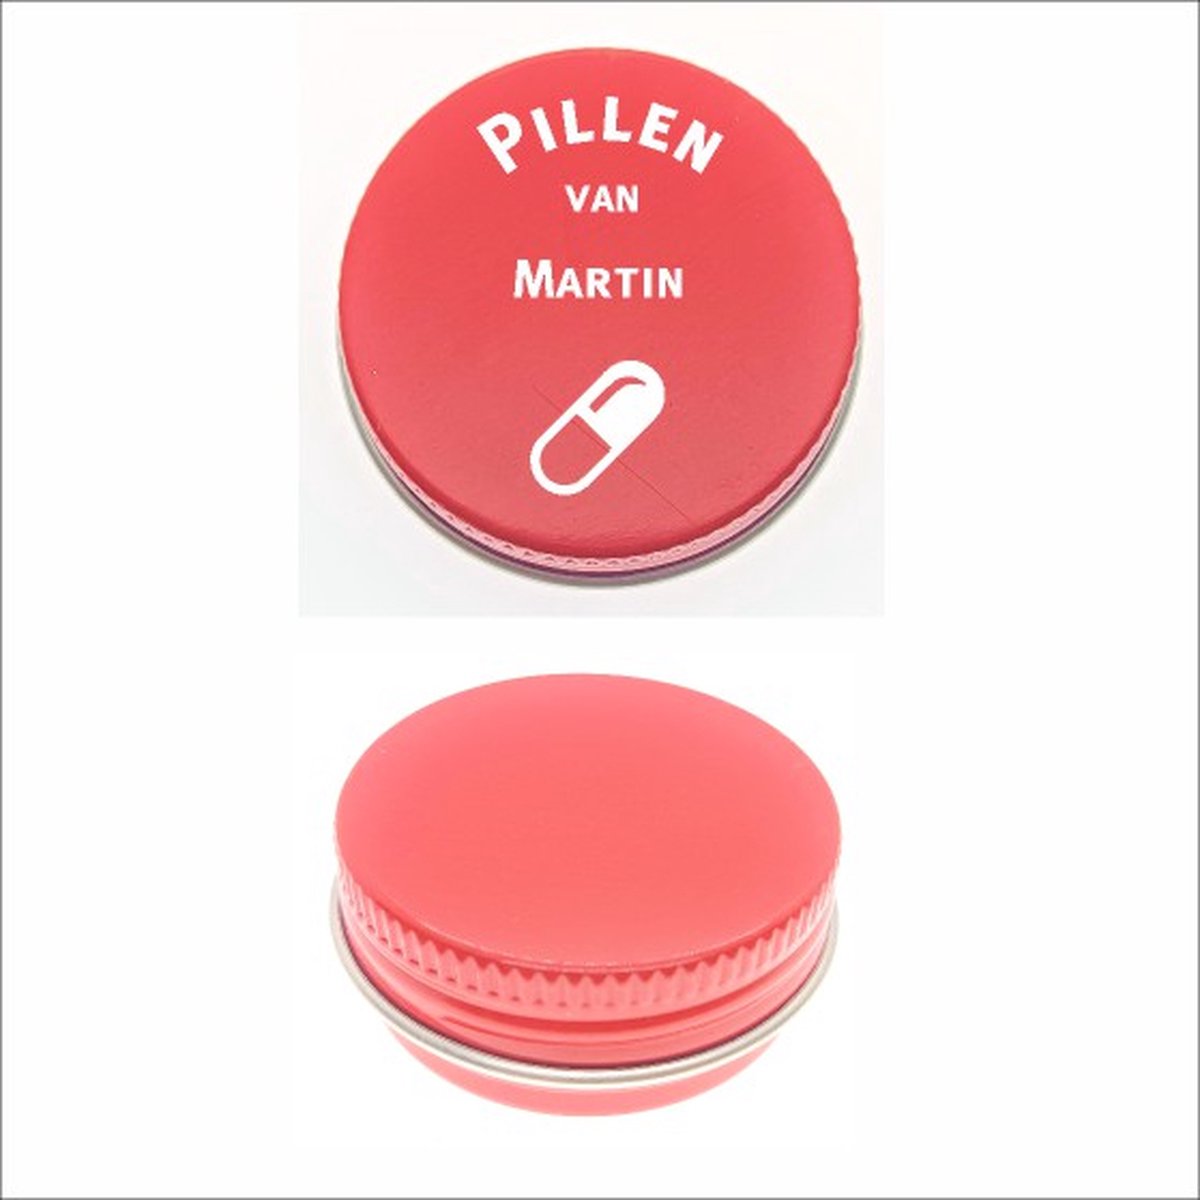 Pillen Blikje Met Naam Gravering - Martin